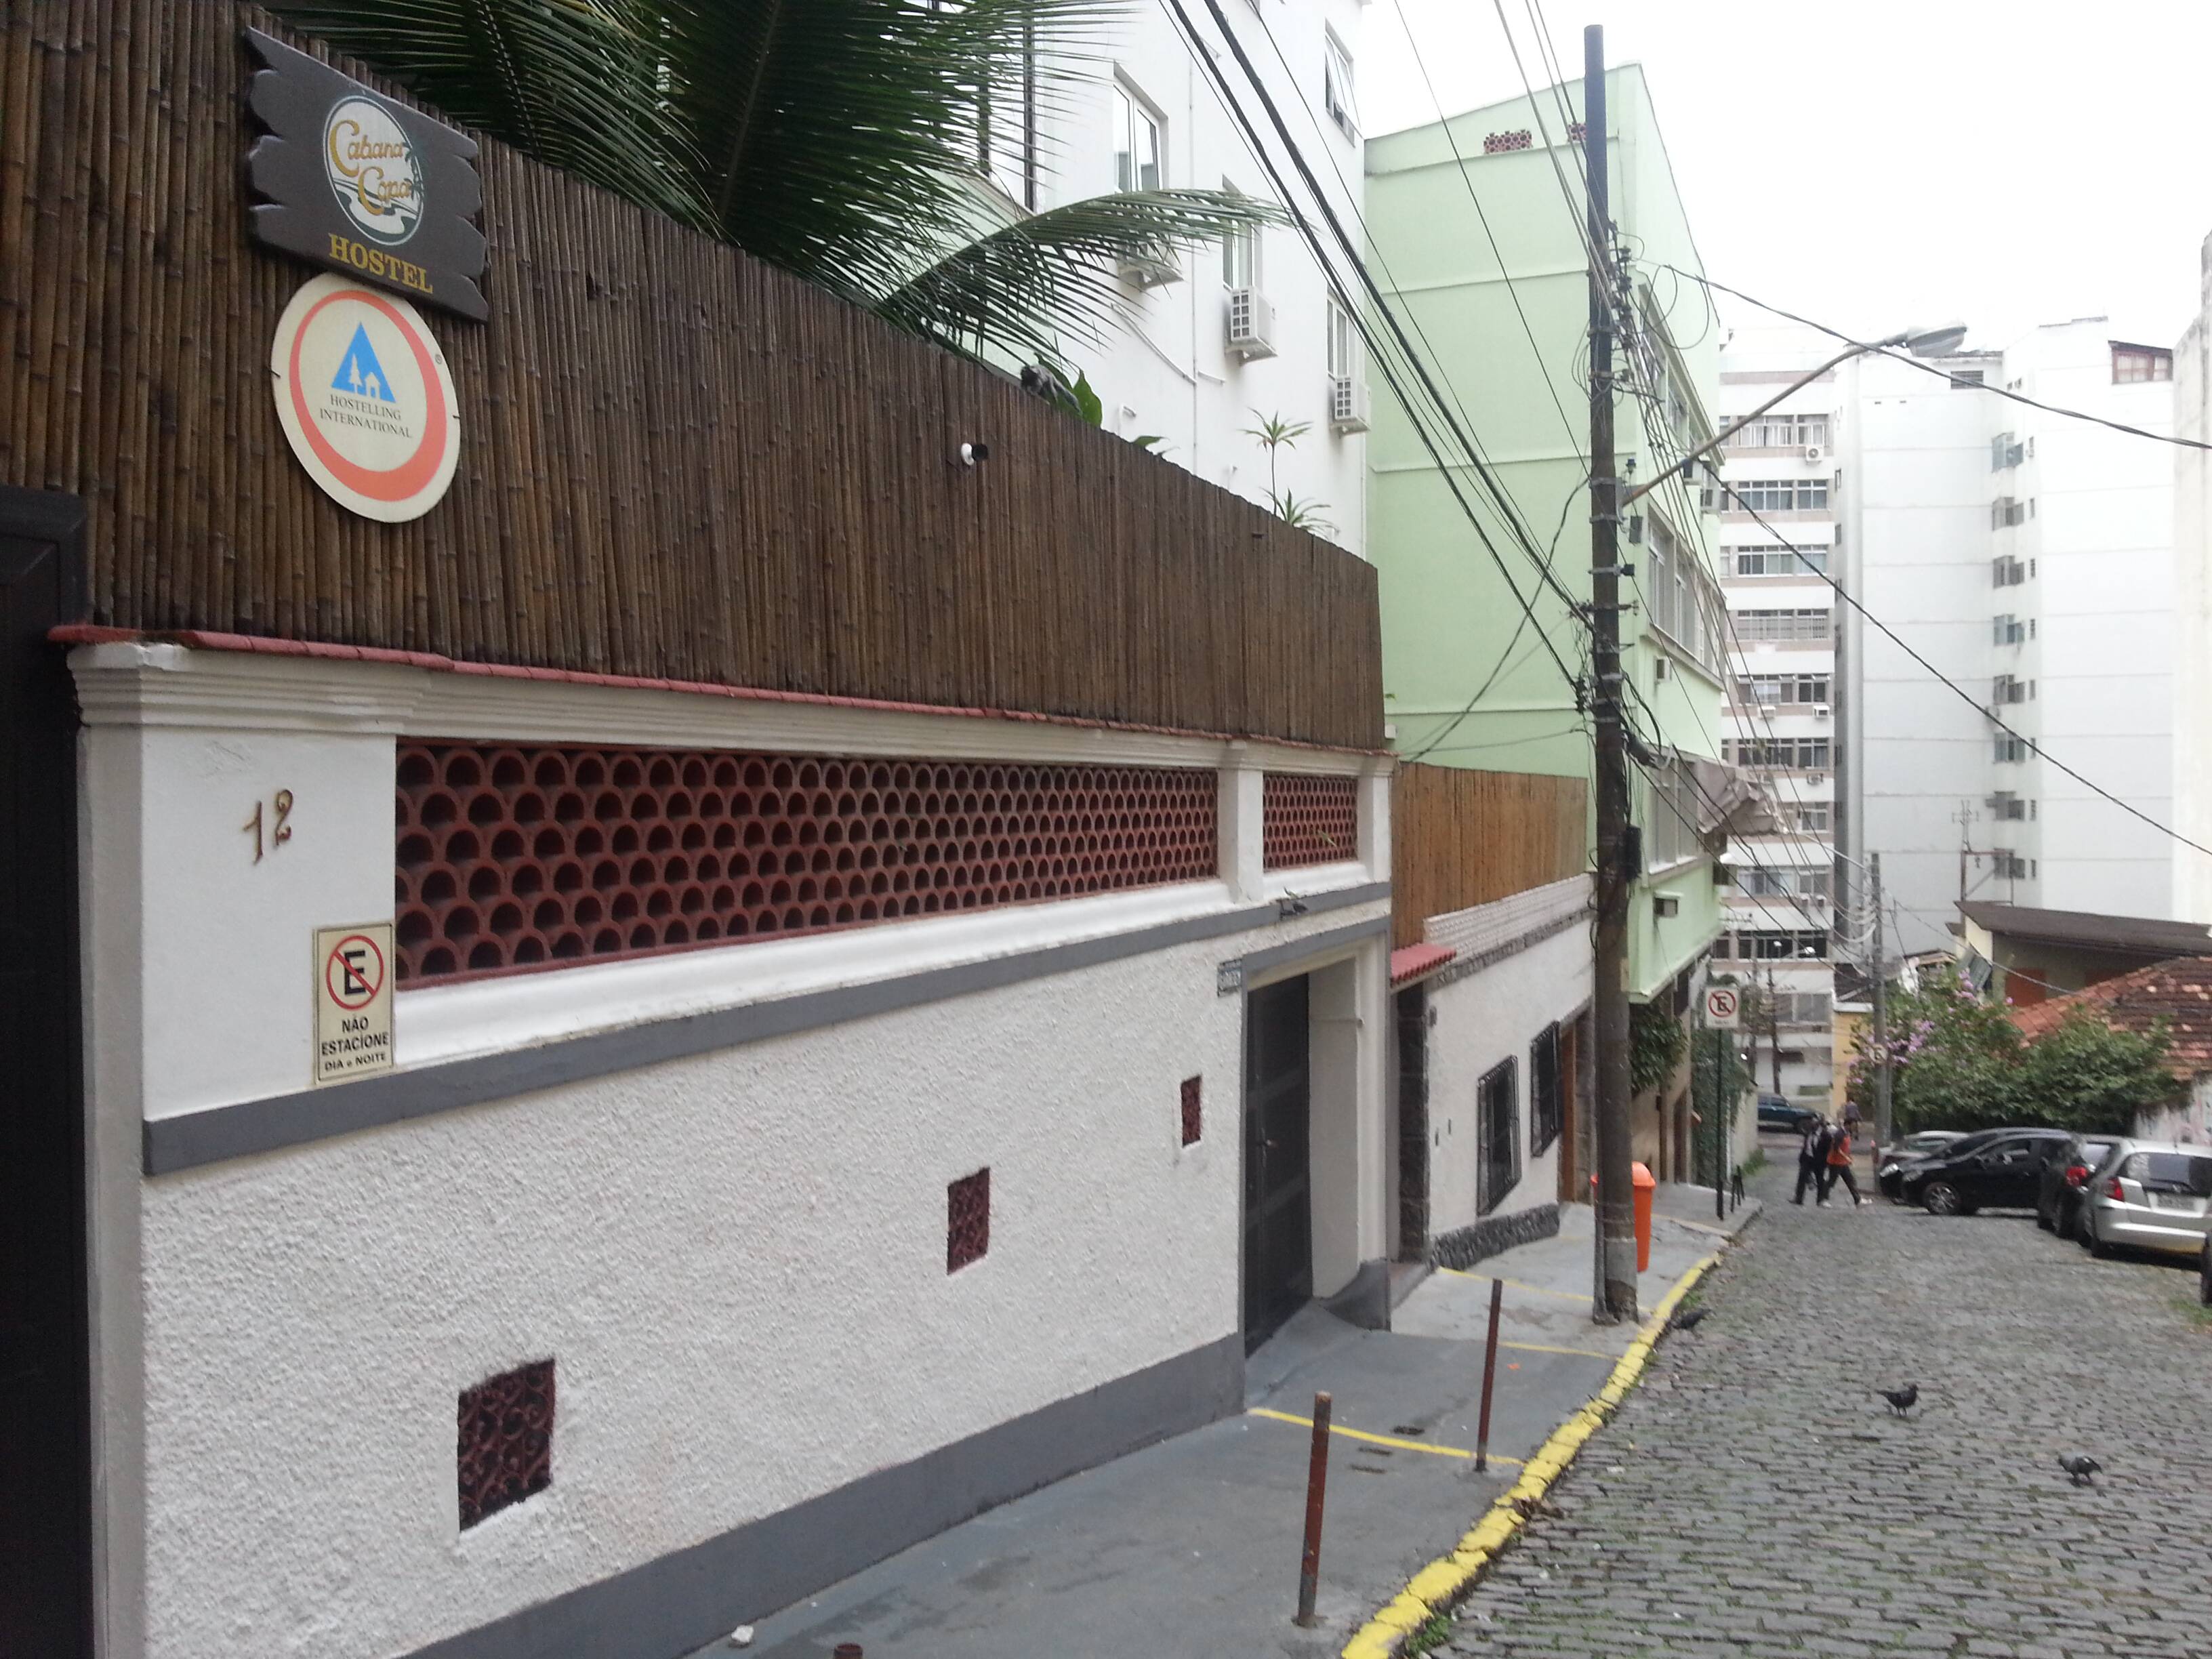 Rua do hostel no Rio de Janeiro